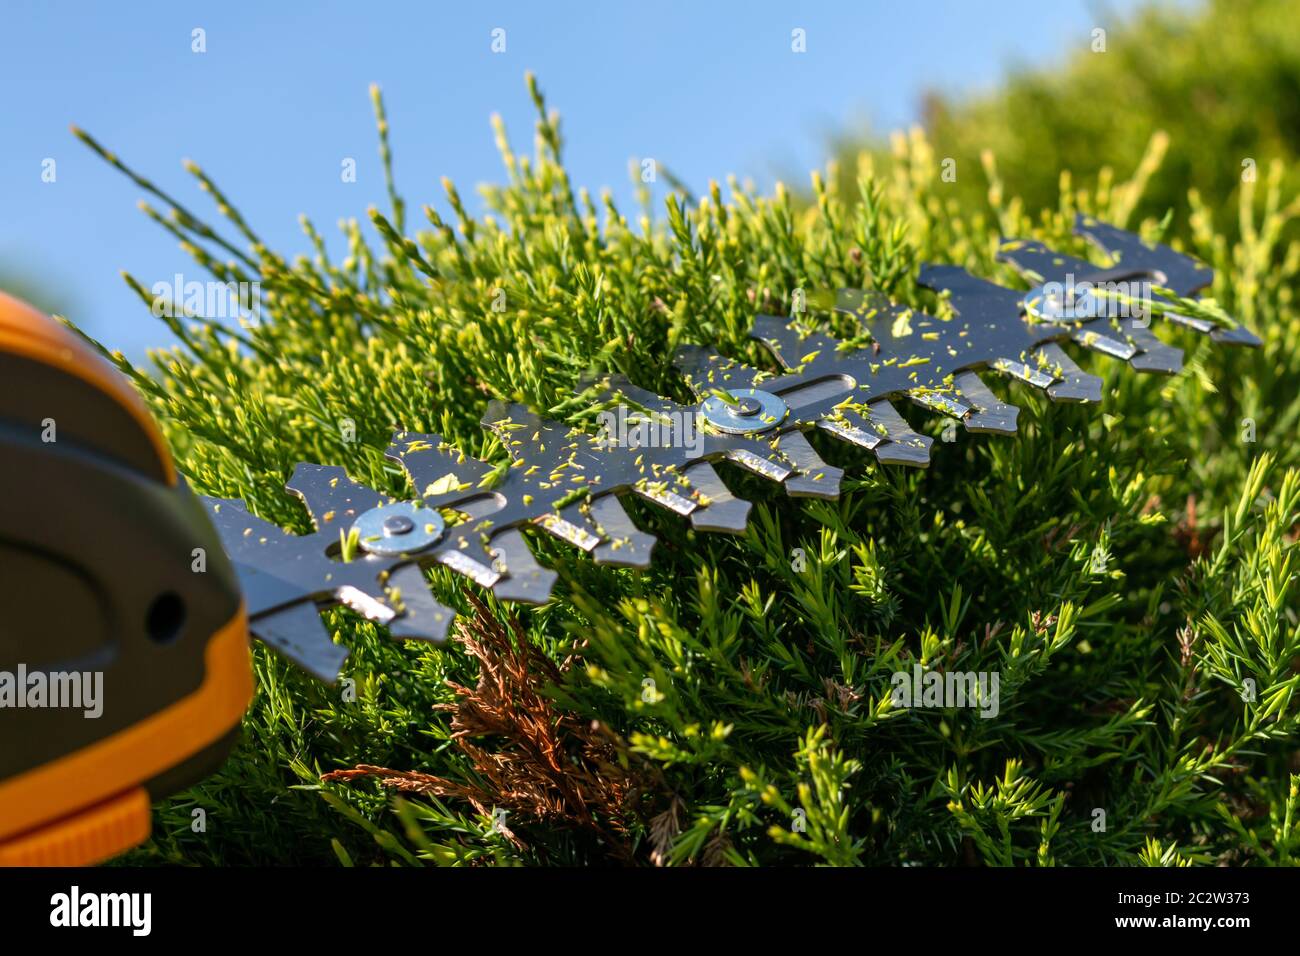 un pequeño cortapatillas de cobertura eléctrico inalámbrico con hojas de arpa, herramienta ligera portátil de corte de ramas en el jardín, recorte de setos y arbustos verdes, du de trabajo Foto de stock